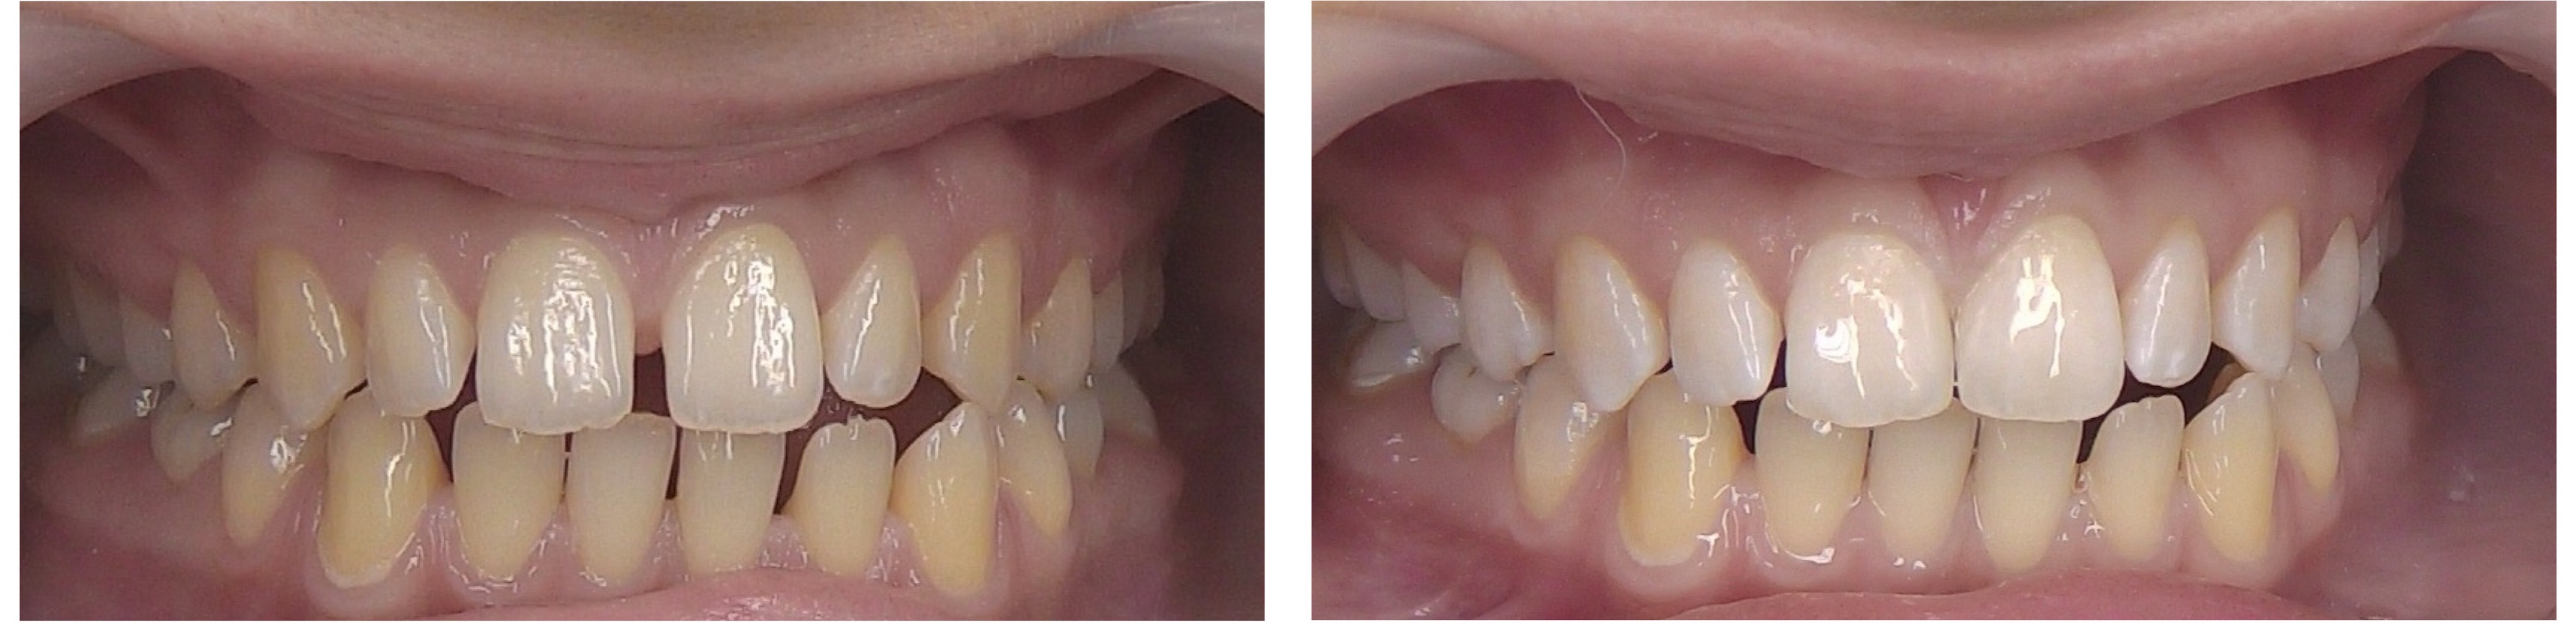 Фото до и после лечения диастемы